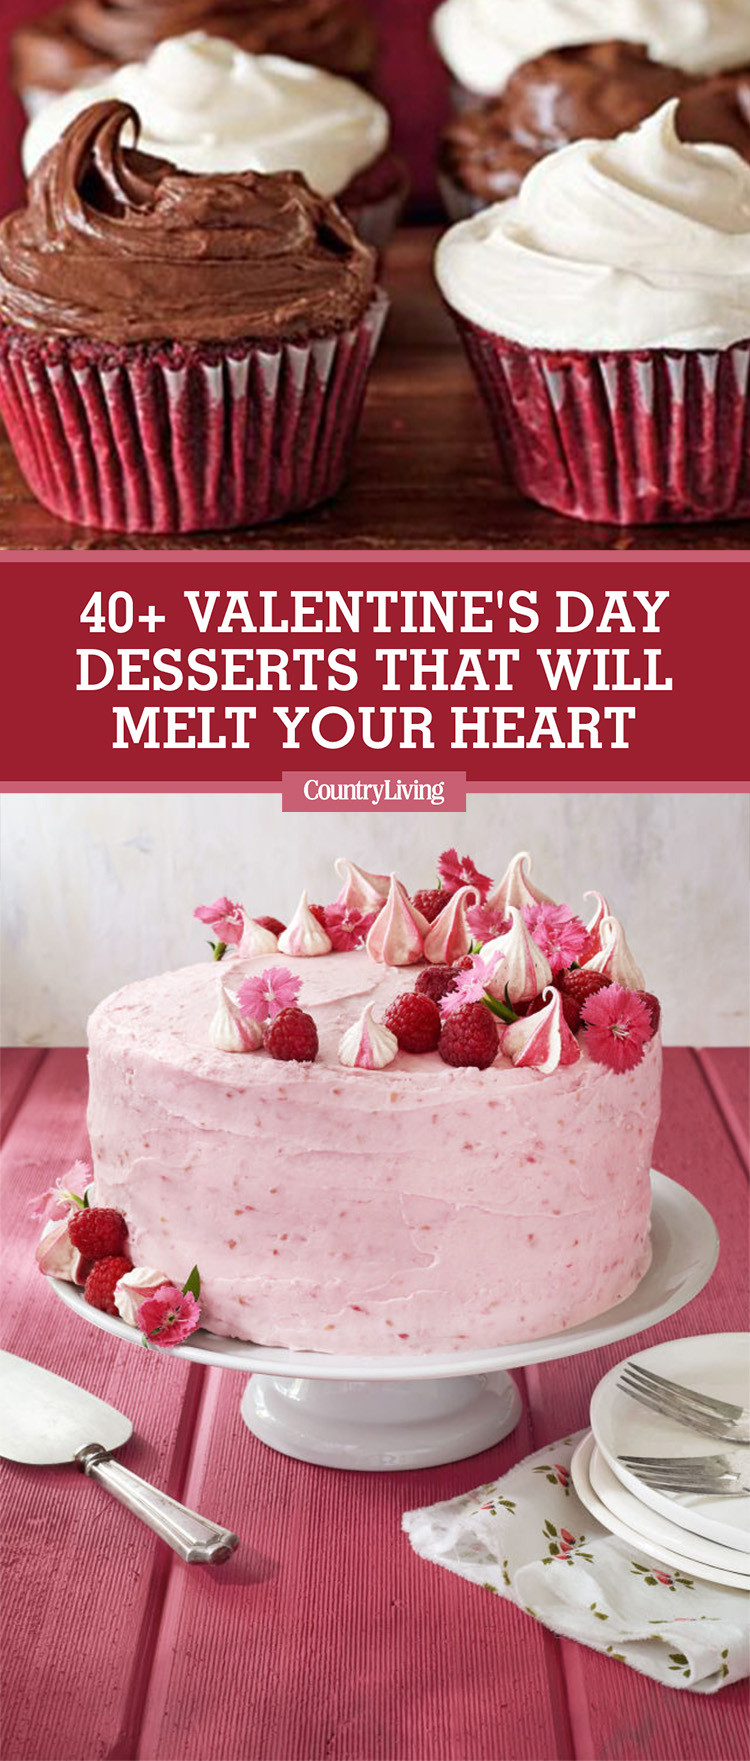 Best Valentines Desserts
 42 Easy Valentine’s Day Desserts Best Recipes for